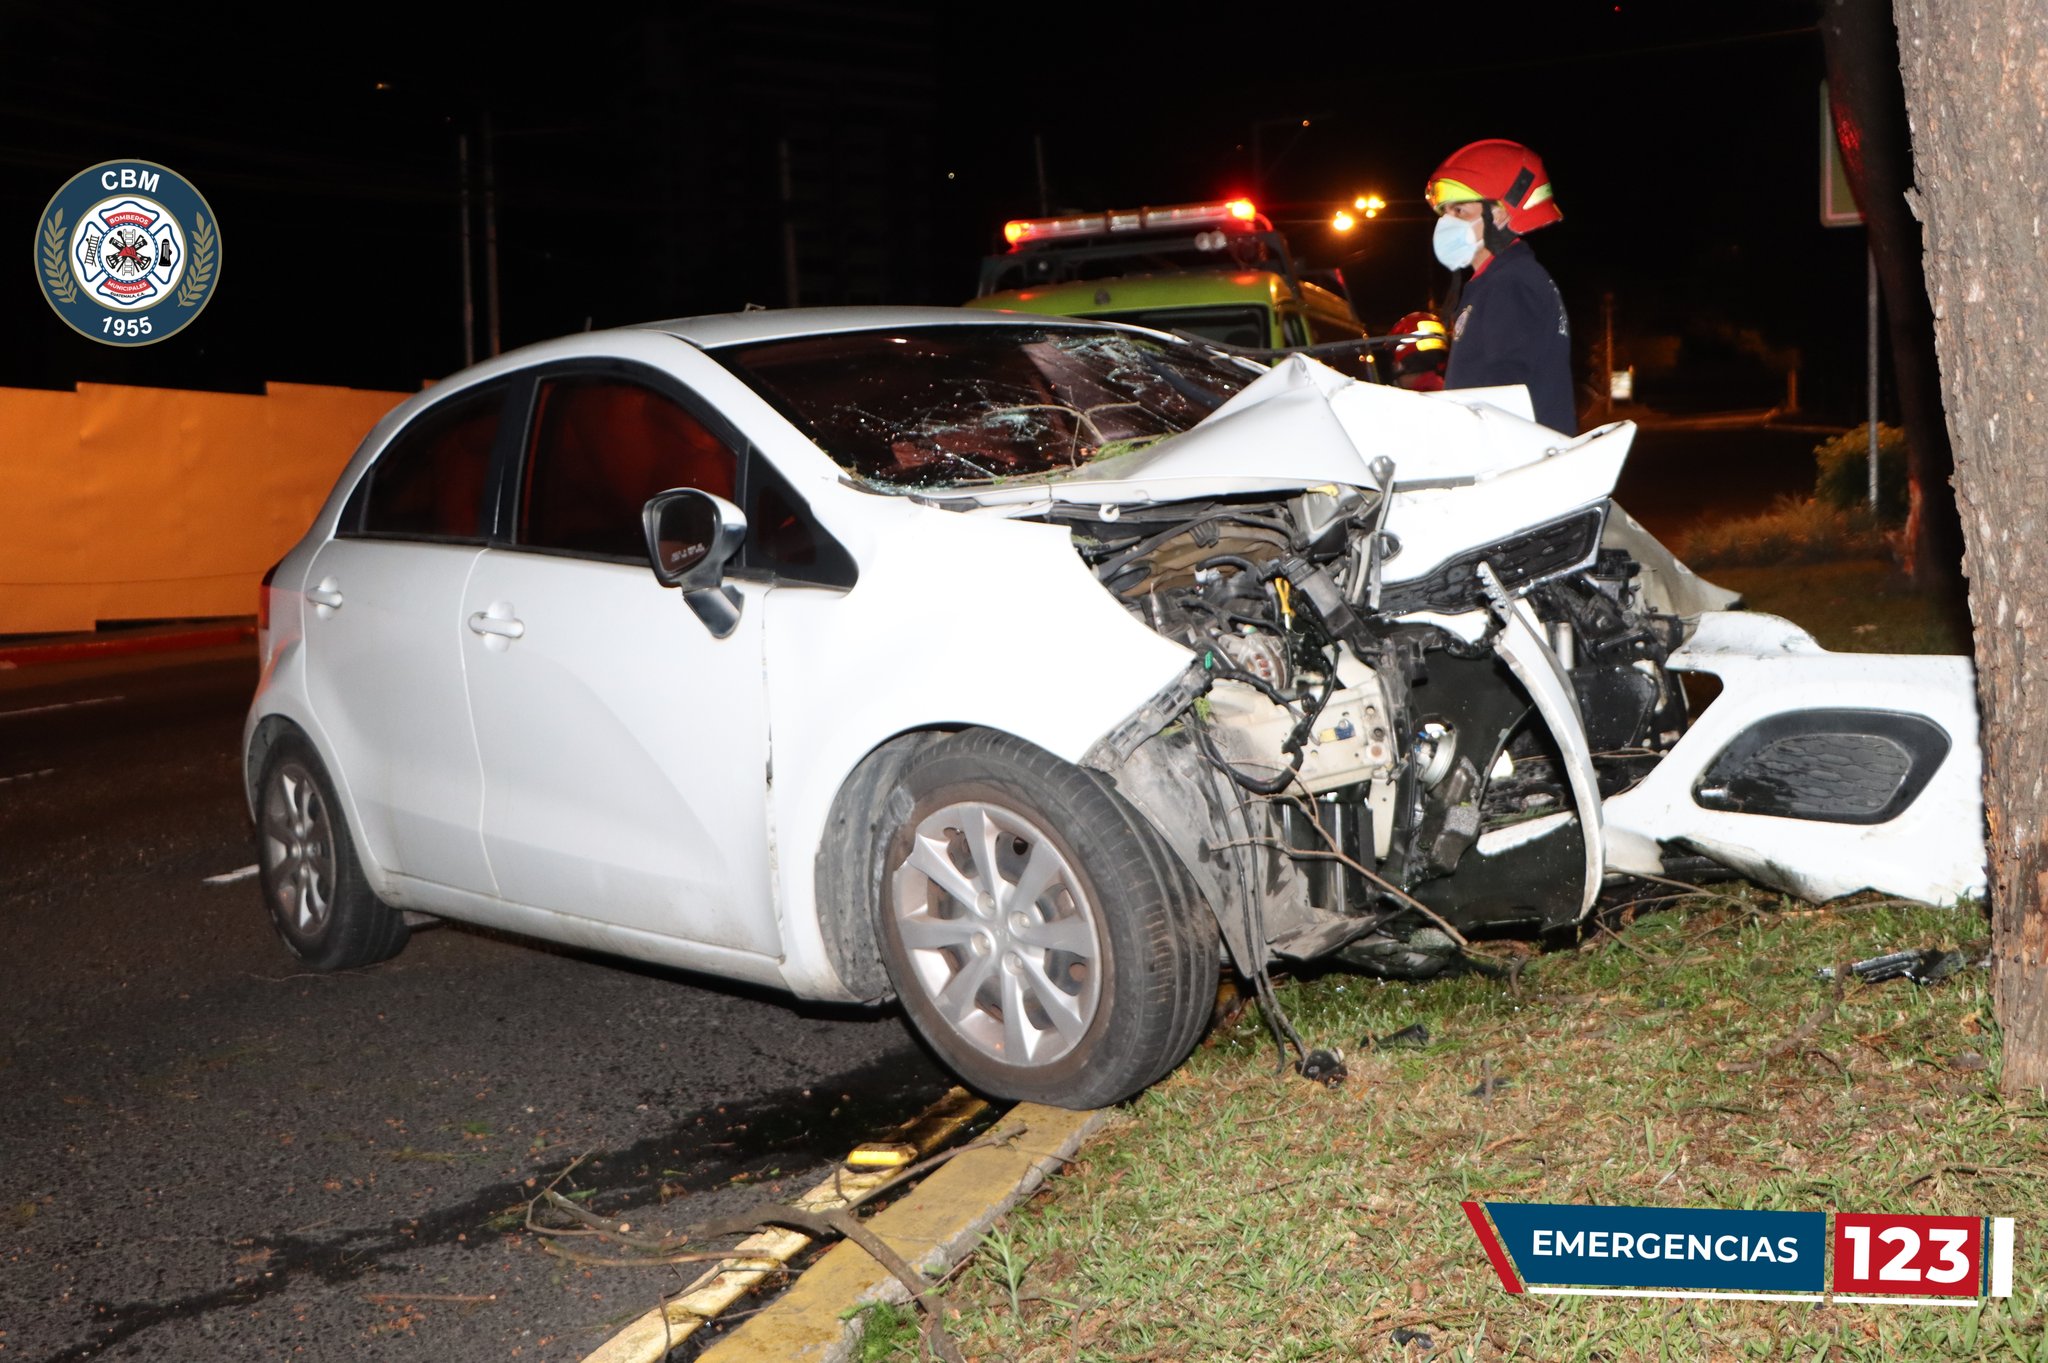 Los accidentes de tránsito ocurren en distintas zonas de la capital y, según las autoridades de Tránsito, una de las principales causas es el exceso de velocidad. (Foto Prensa Libre: CBM)